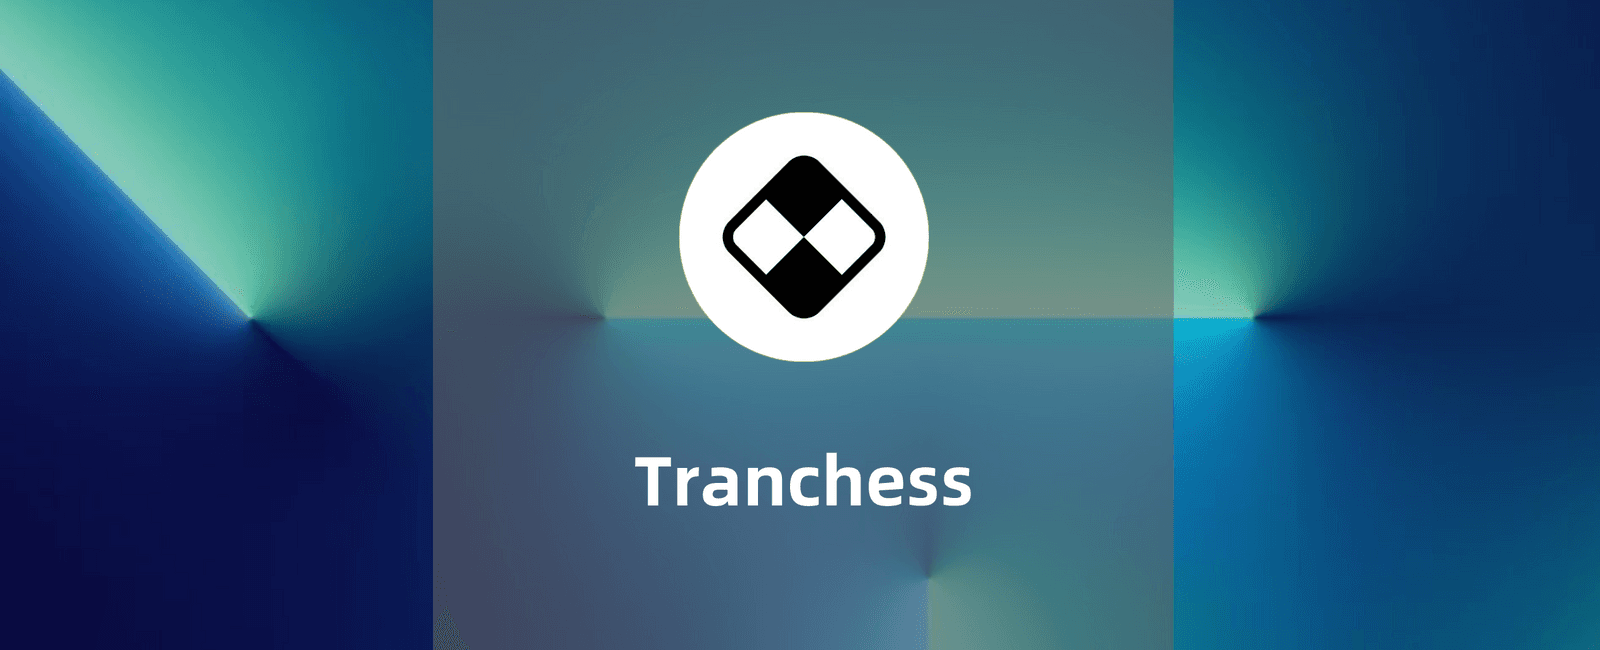 Tranchess-DeFi世界的结构化基金教程